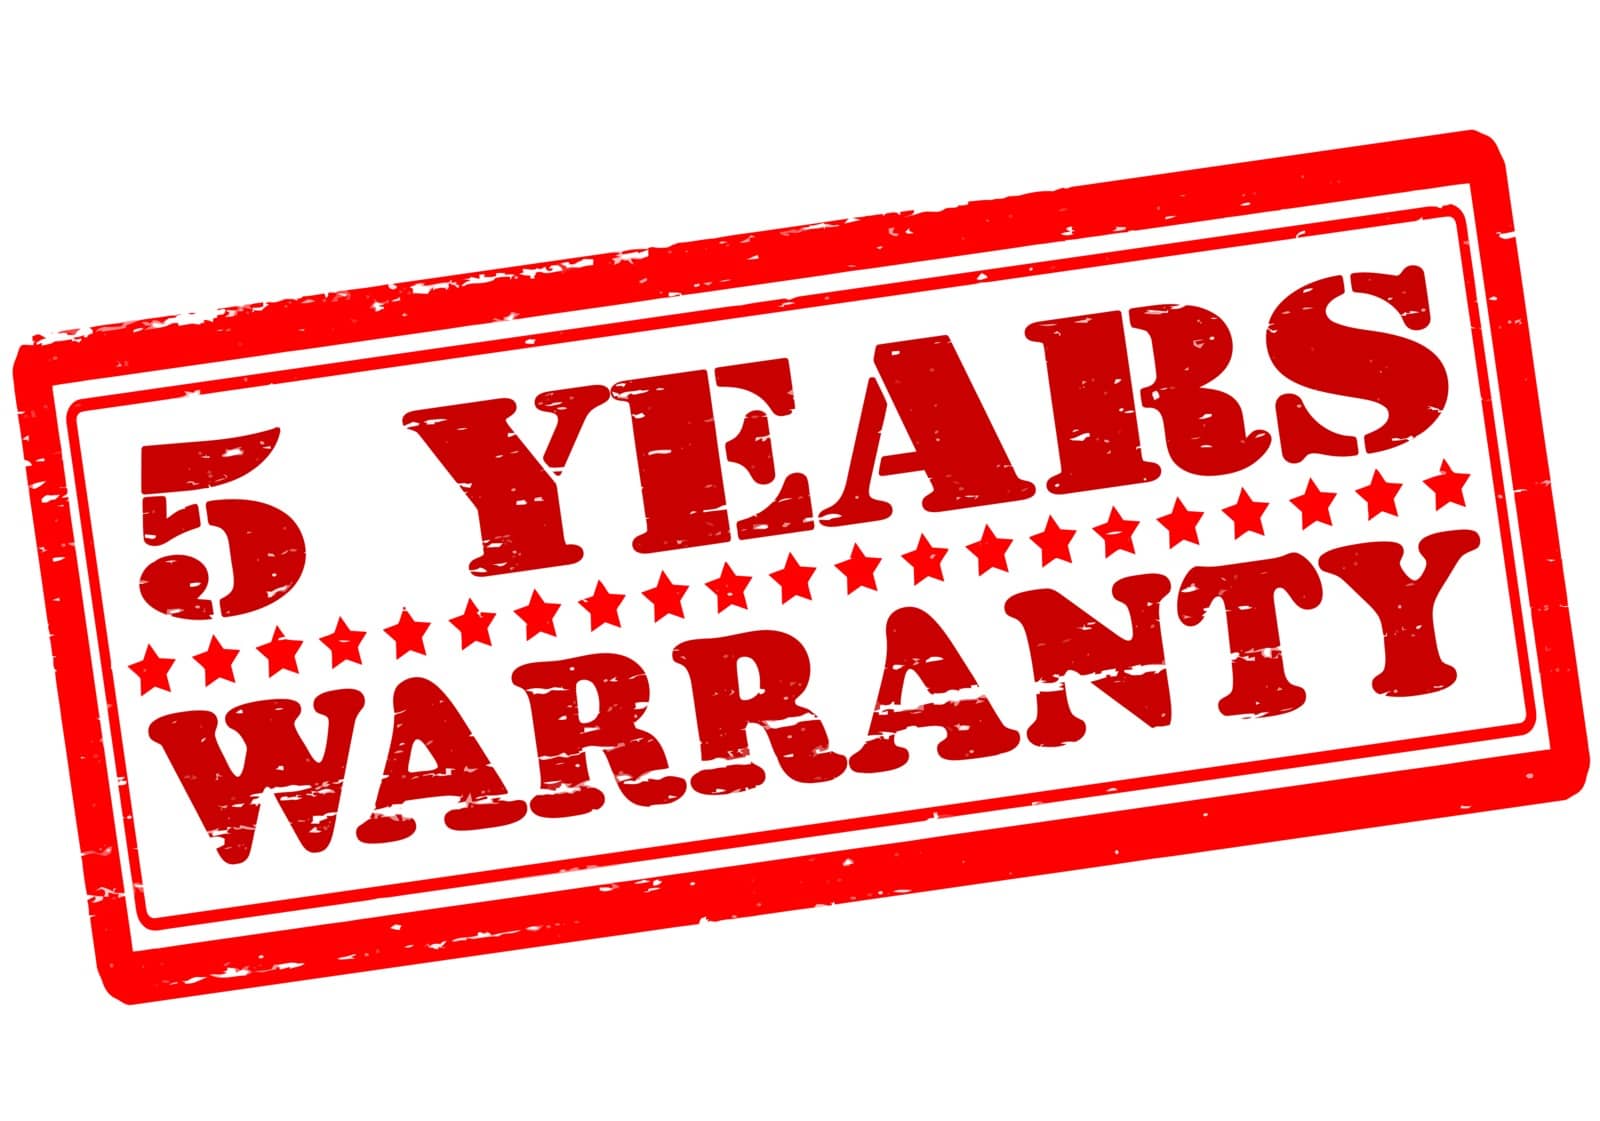 Five years warranty by carmenbobo